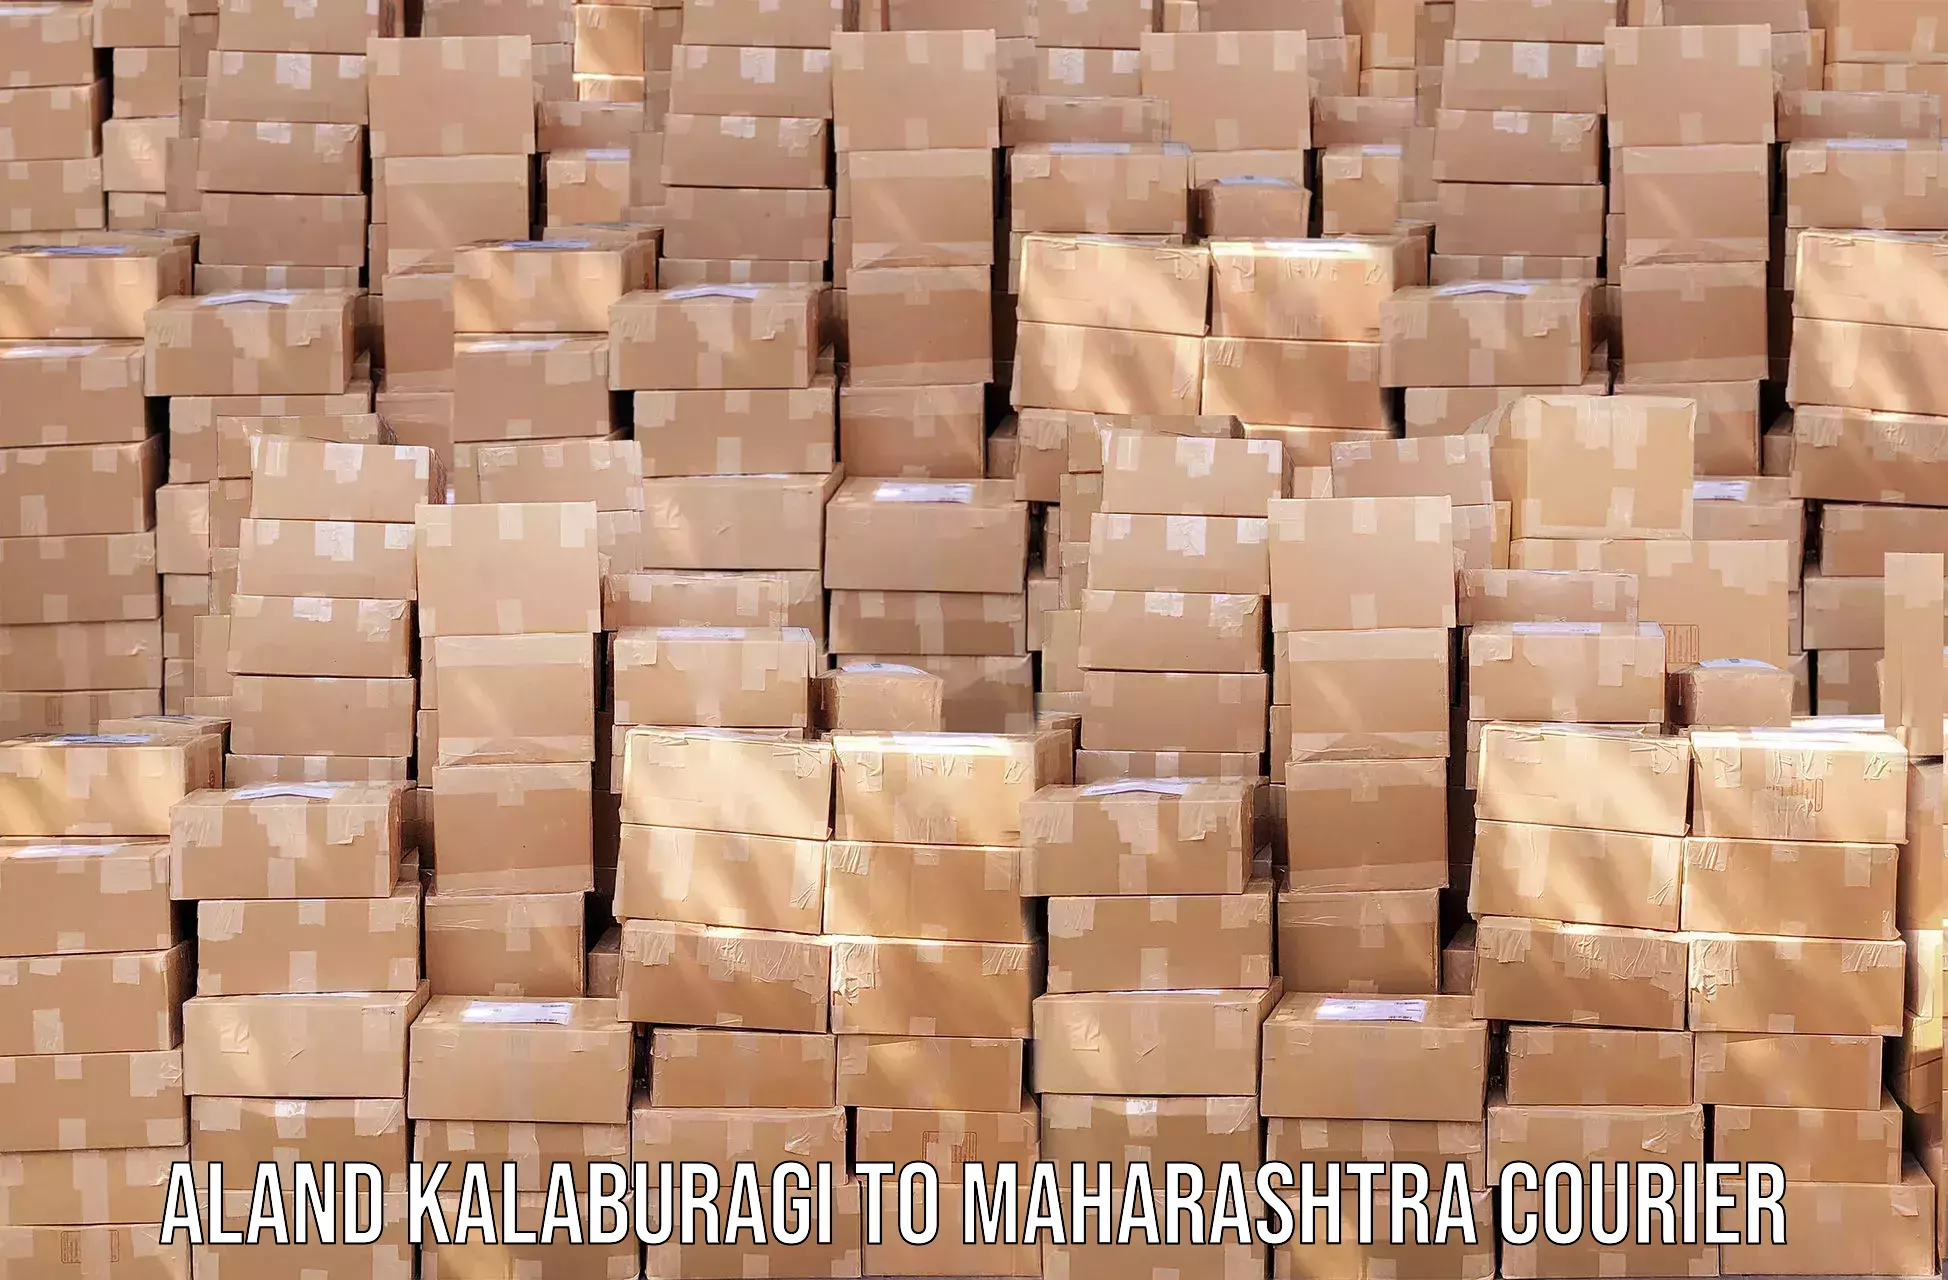 Personal courier services Aland Kalaburagi to Dadar